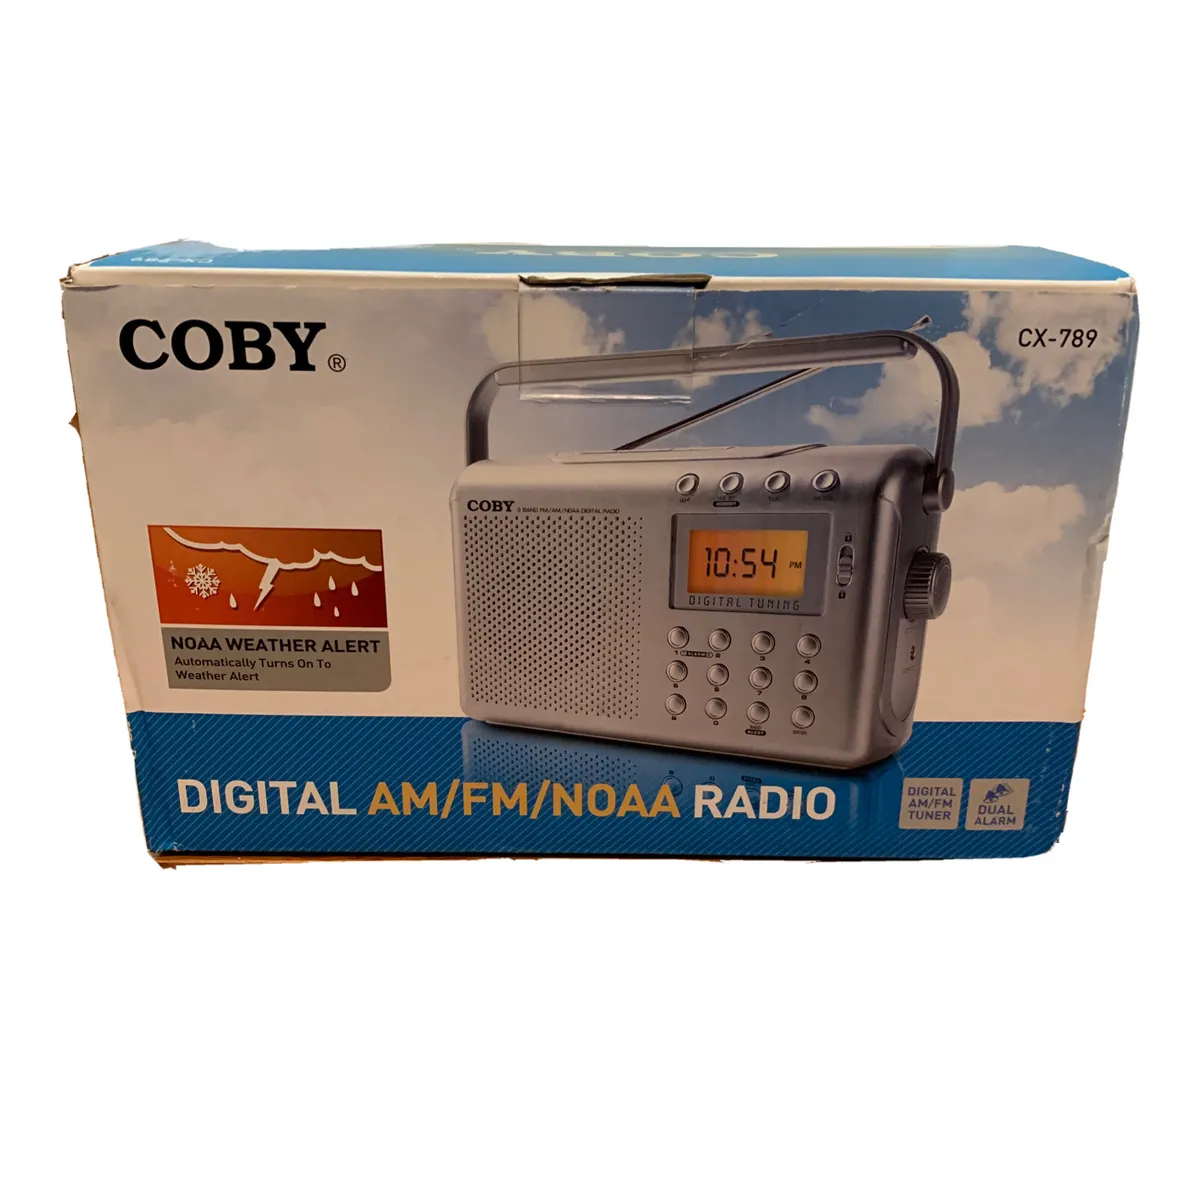 CX789 - Digital AM/FM/NOAA Radio